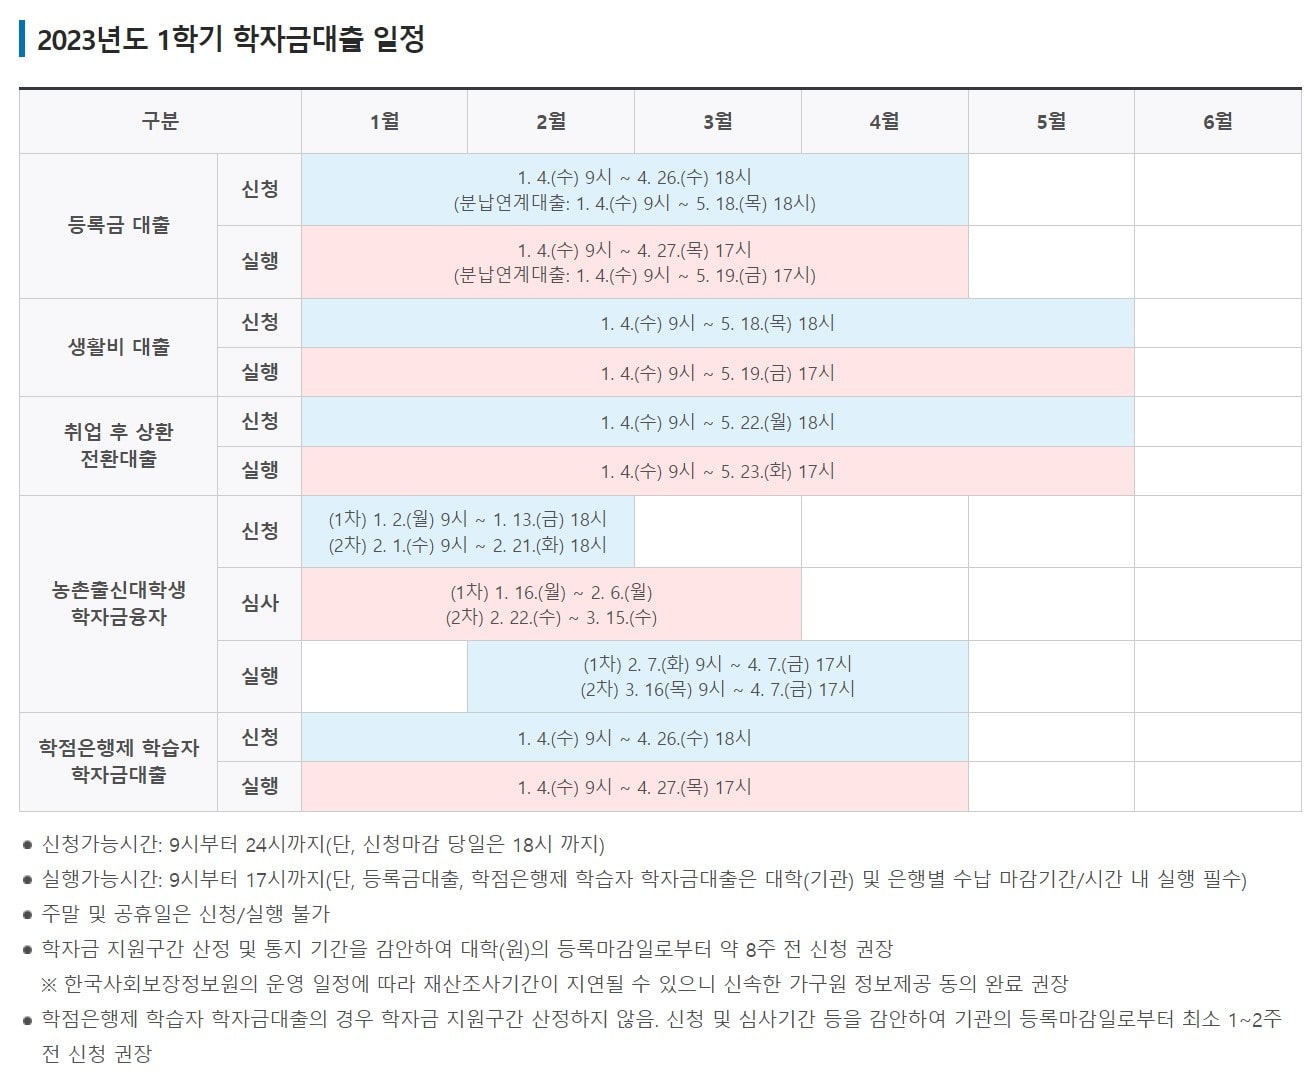 한국장학재단 생활비대출 기간 신청 실행